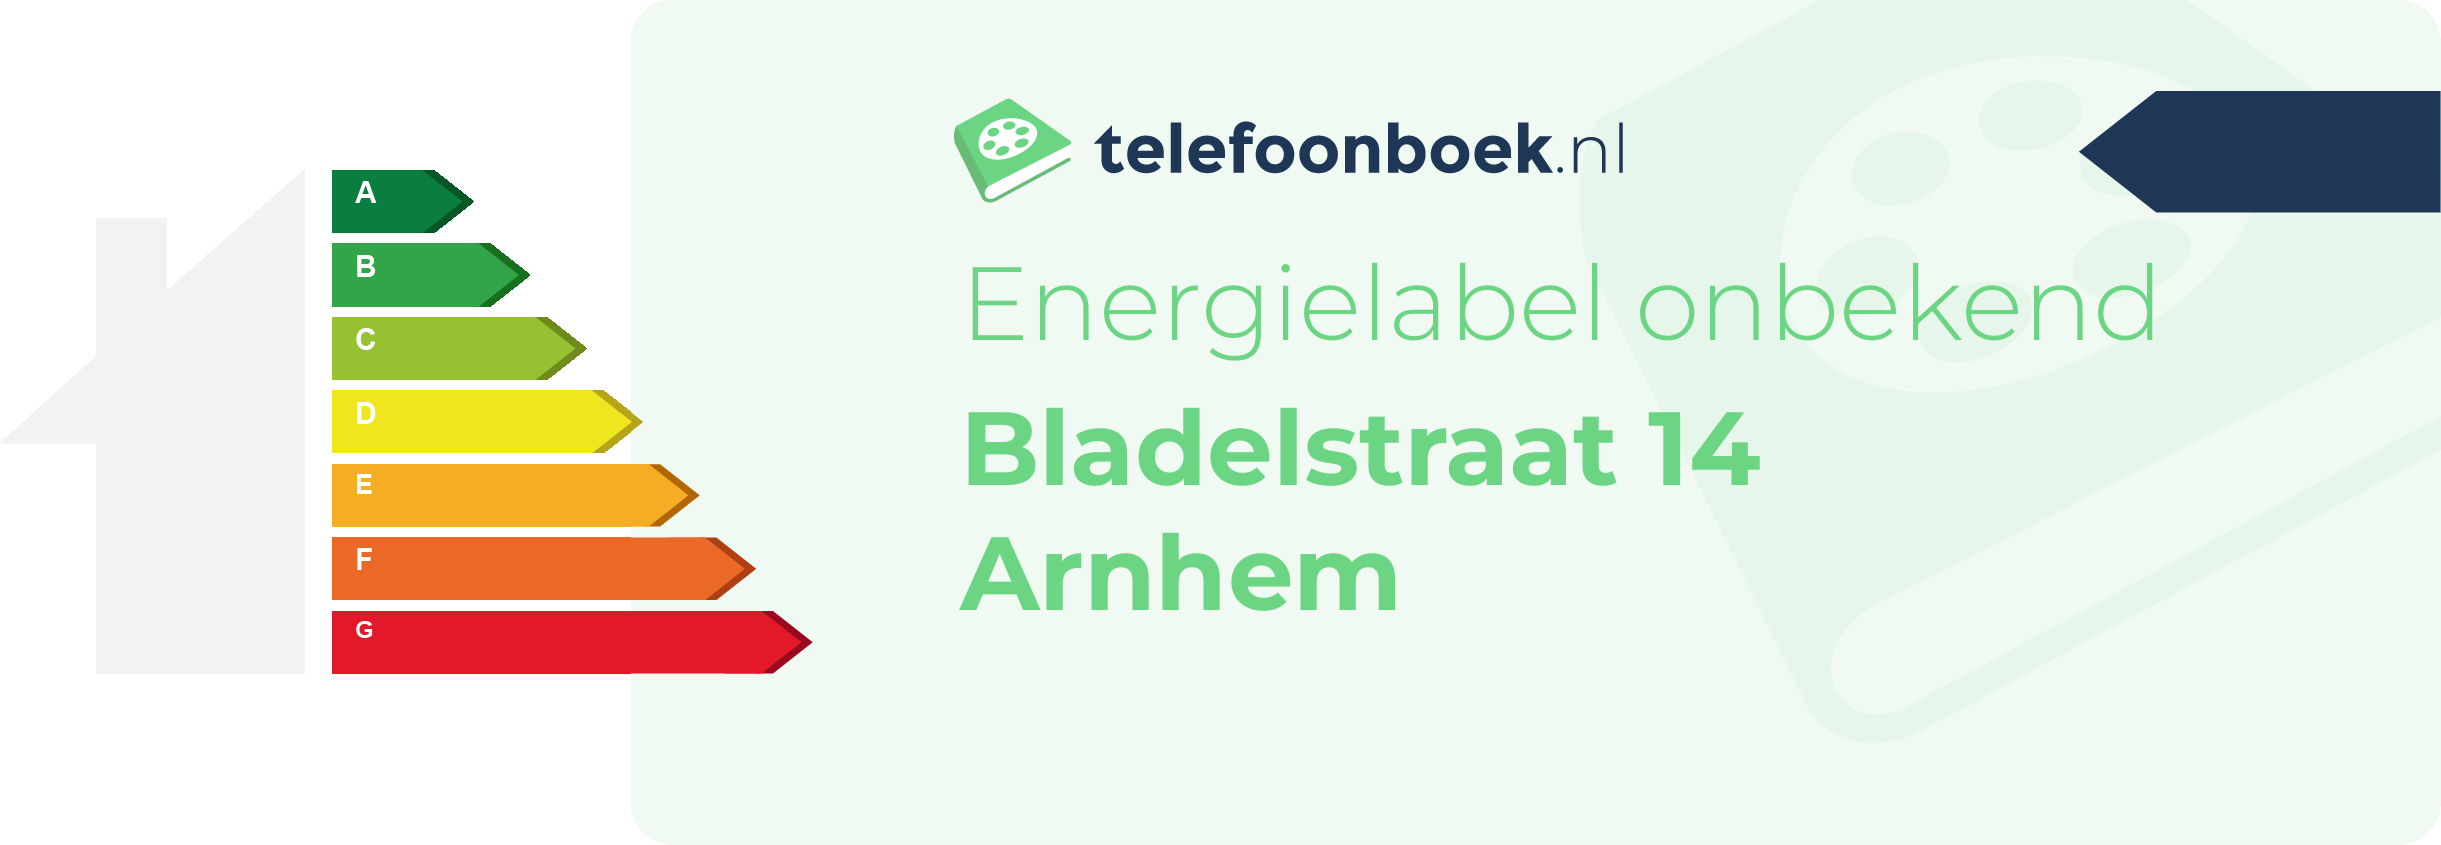 Energielabel Bladelstraat 14 Arnhem